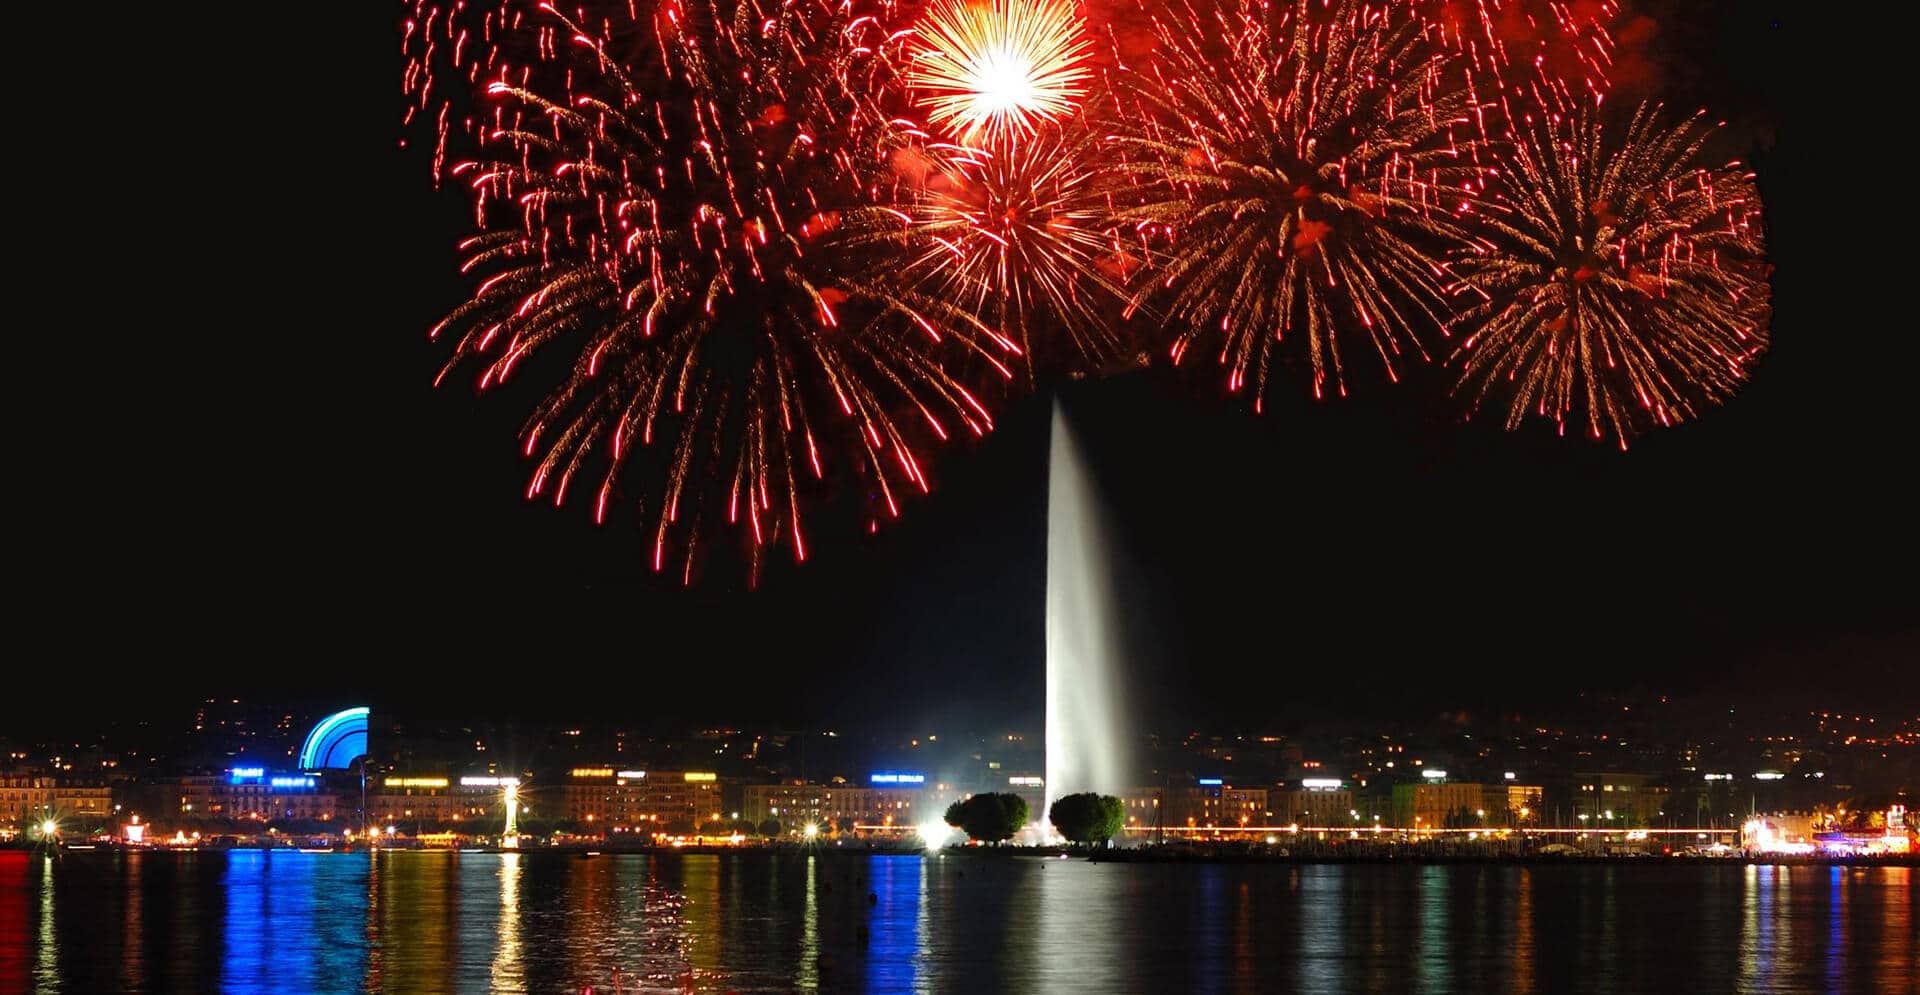 Lake Geneva Summer festival fireworks night beginning of August